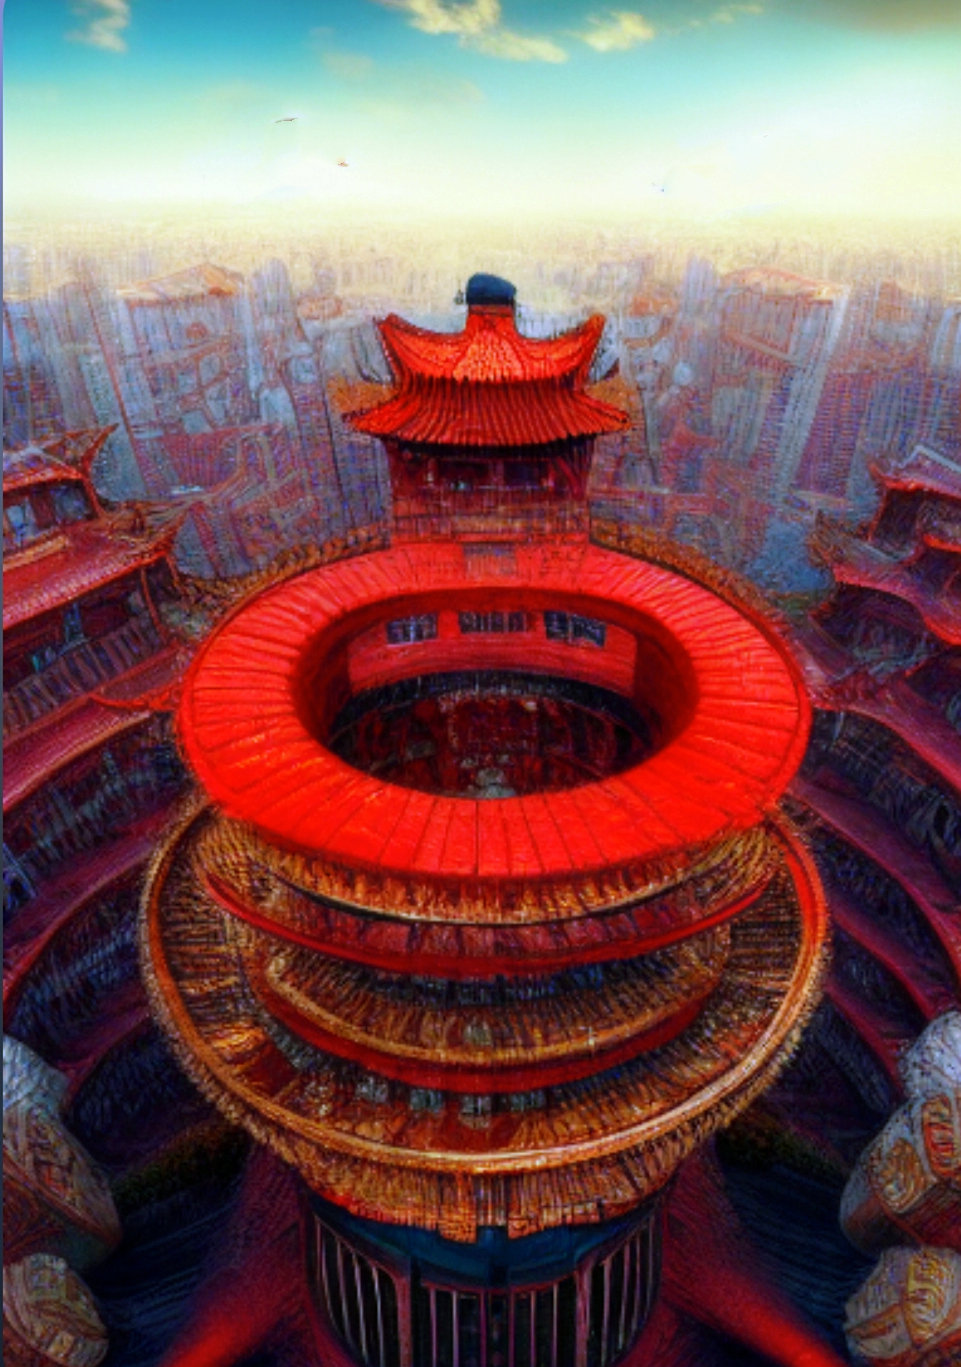 鸟巢是北京的奥运地标建筑,也是北京的标志性建筑之一